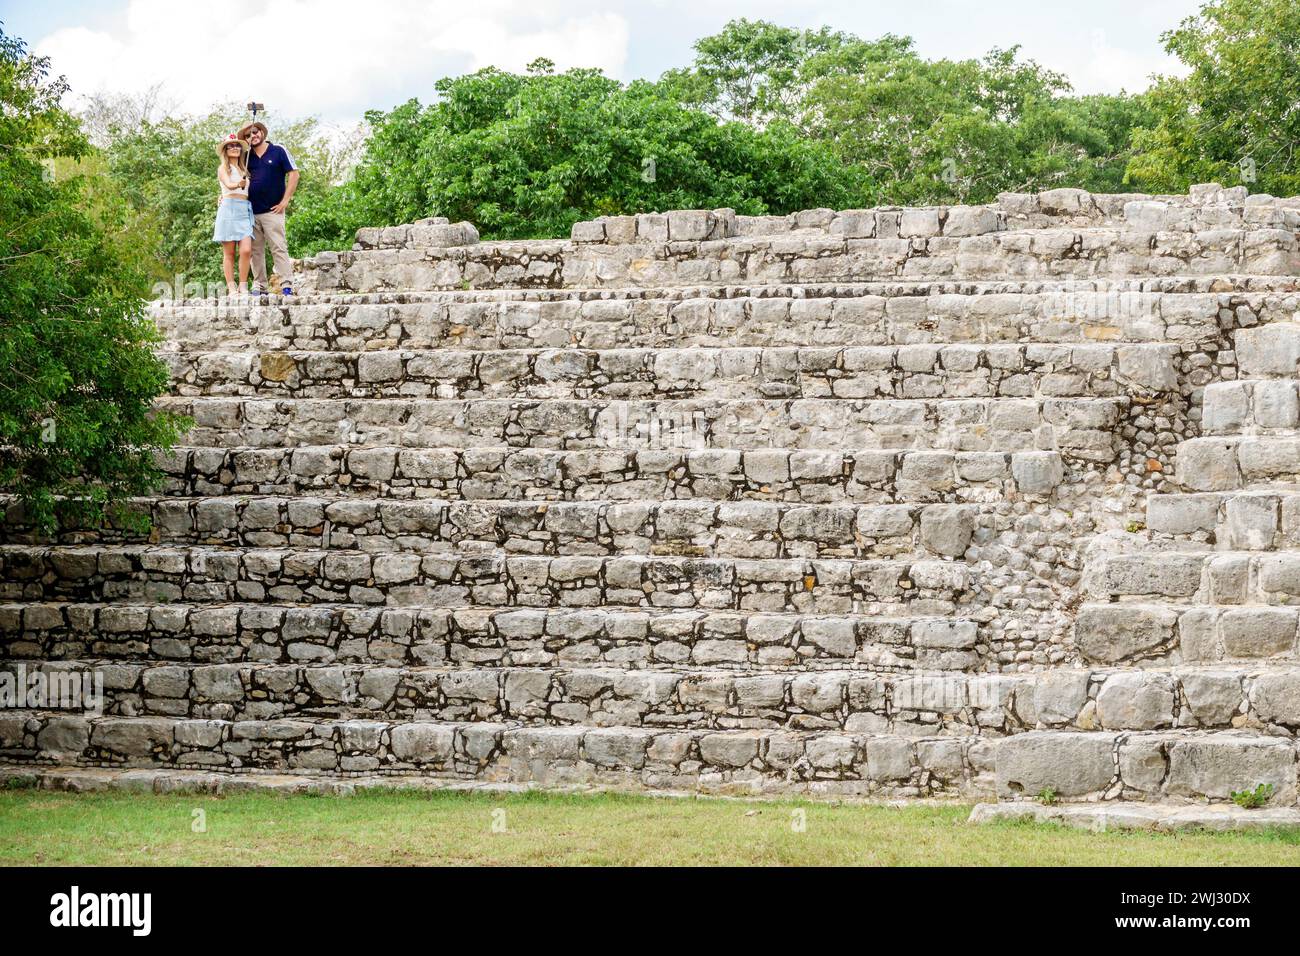 Merida Mexico, Dzibilchaltun Archäologische Zone Nationalpark, Maya Zivilisation Stadt Ruinen, Zona Arqueologica de Dzibilchaltun, Struktur 45 Felsen Stockfoto